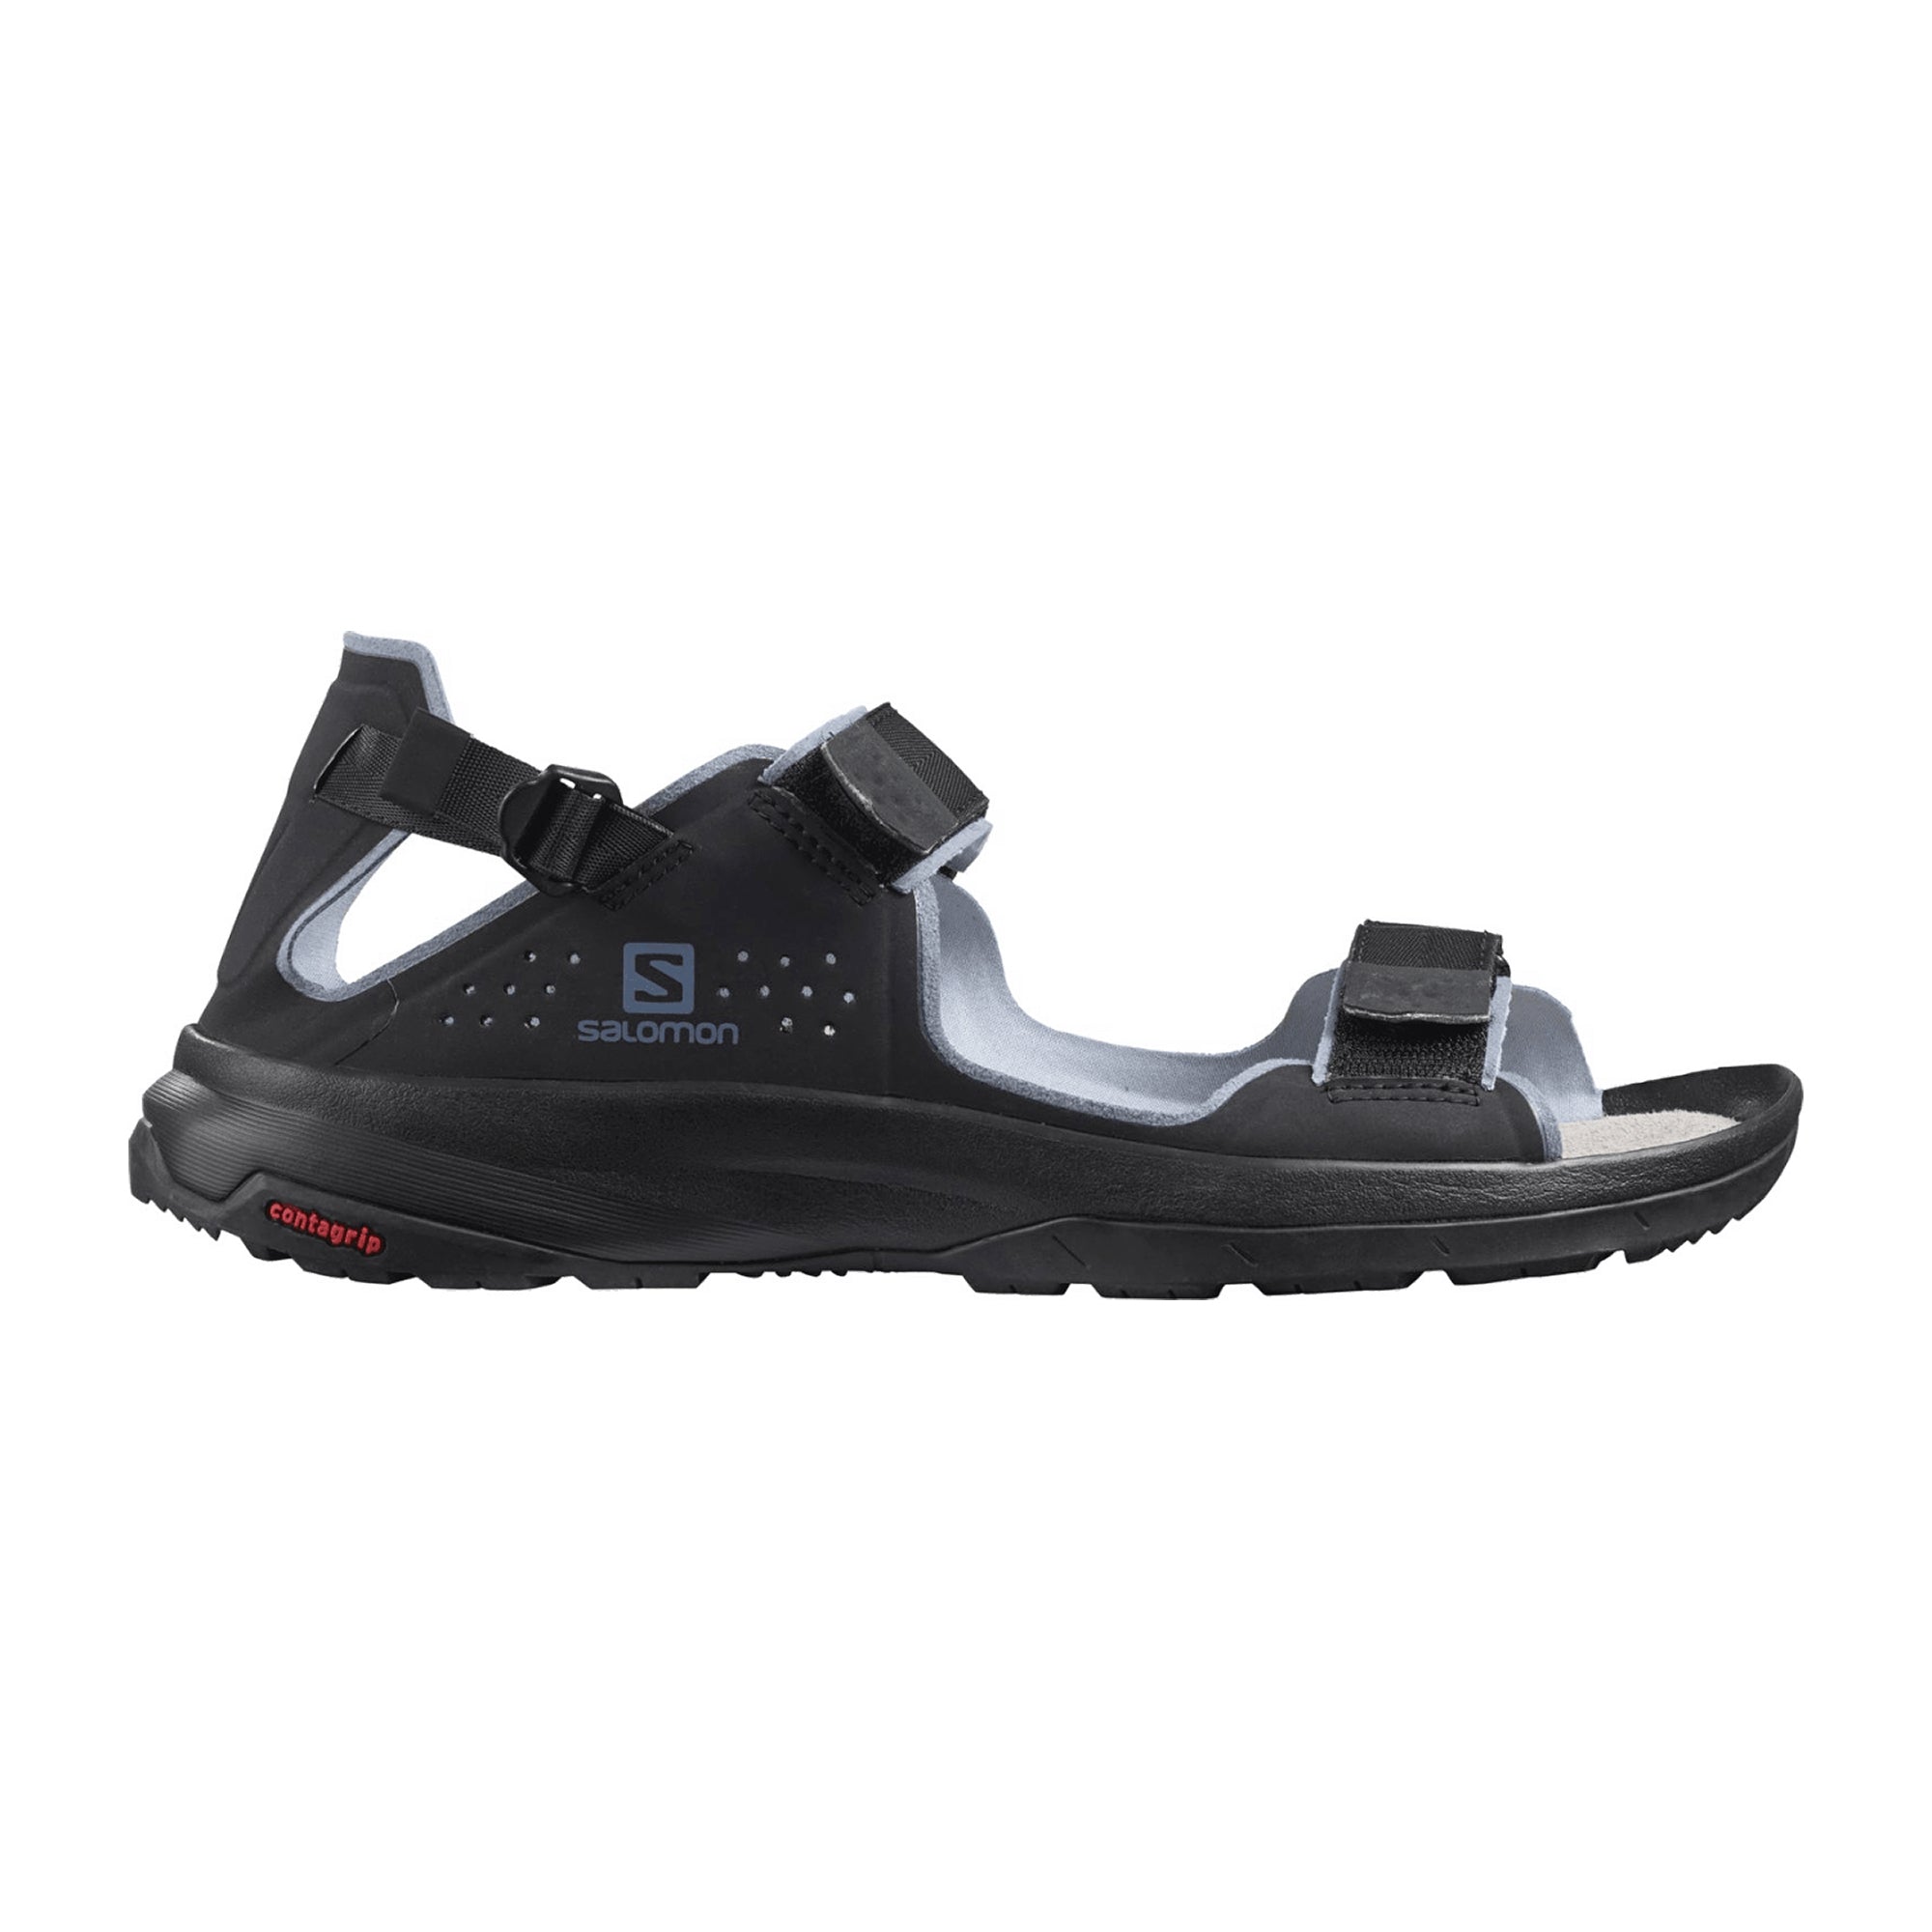 Salomon shoes TECH SANDAL FEEL Black/ for men, black